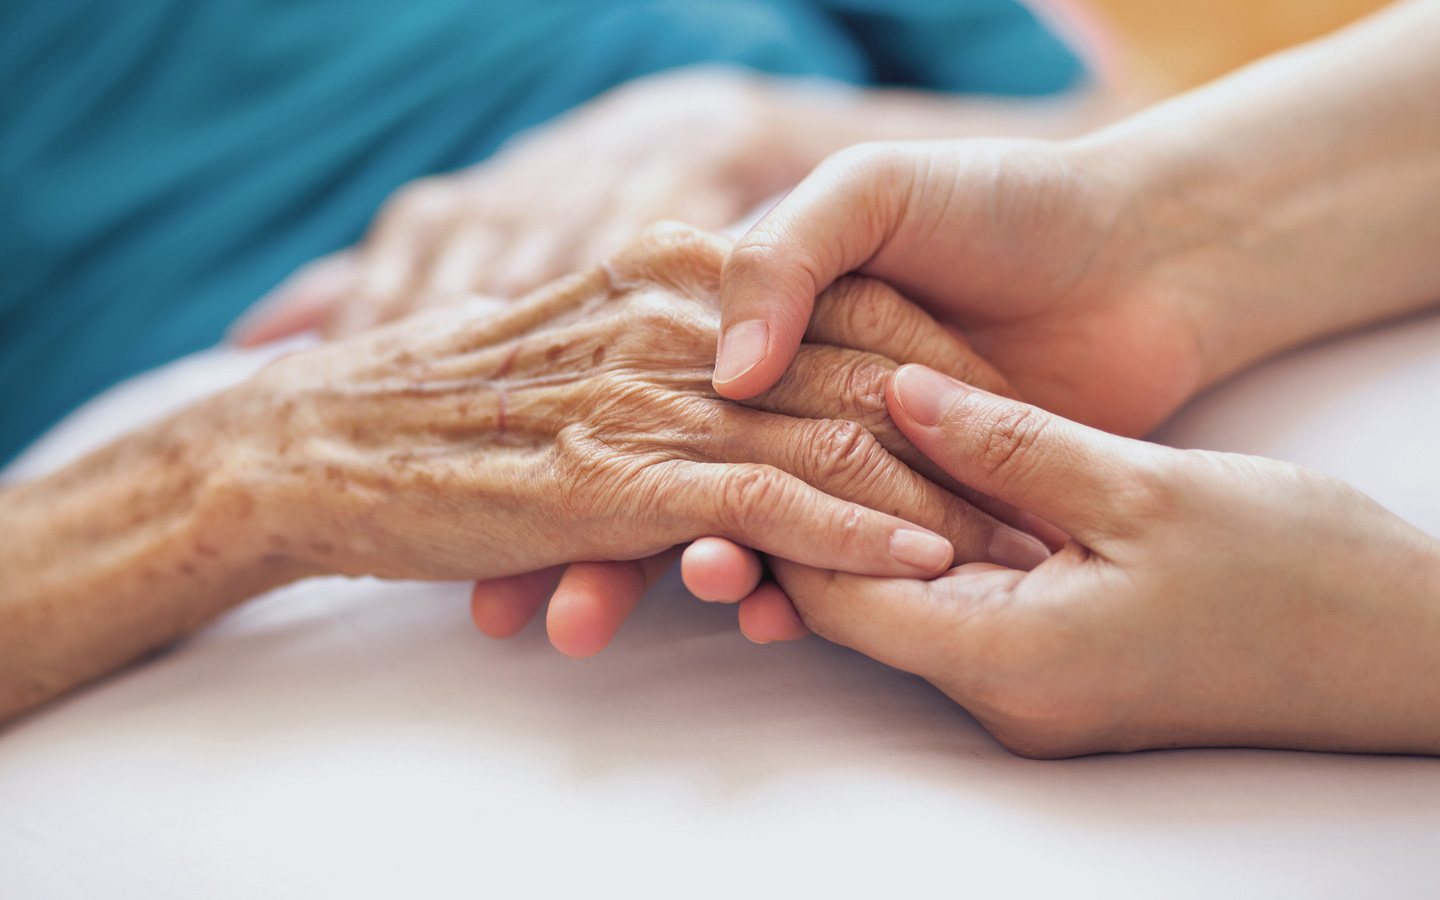 Foto: Zwei Hände eines jüngeren Menschen halten die Hand eines älteren Menschen.